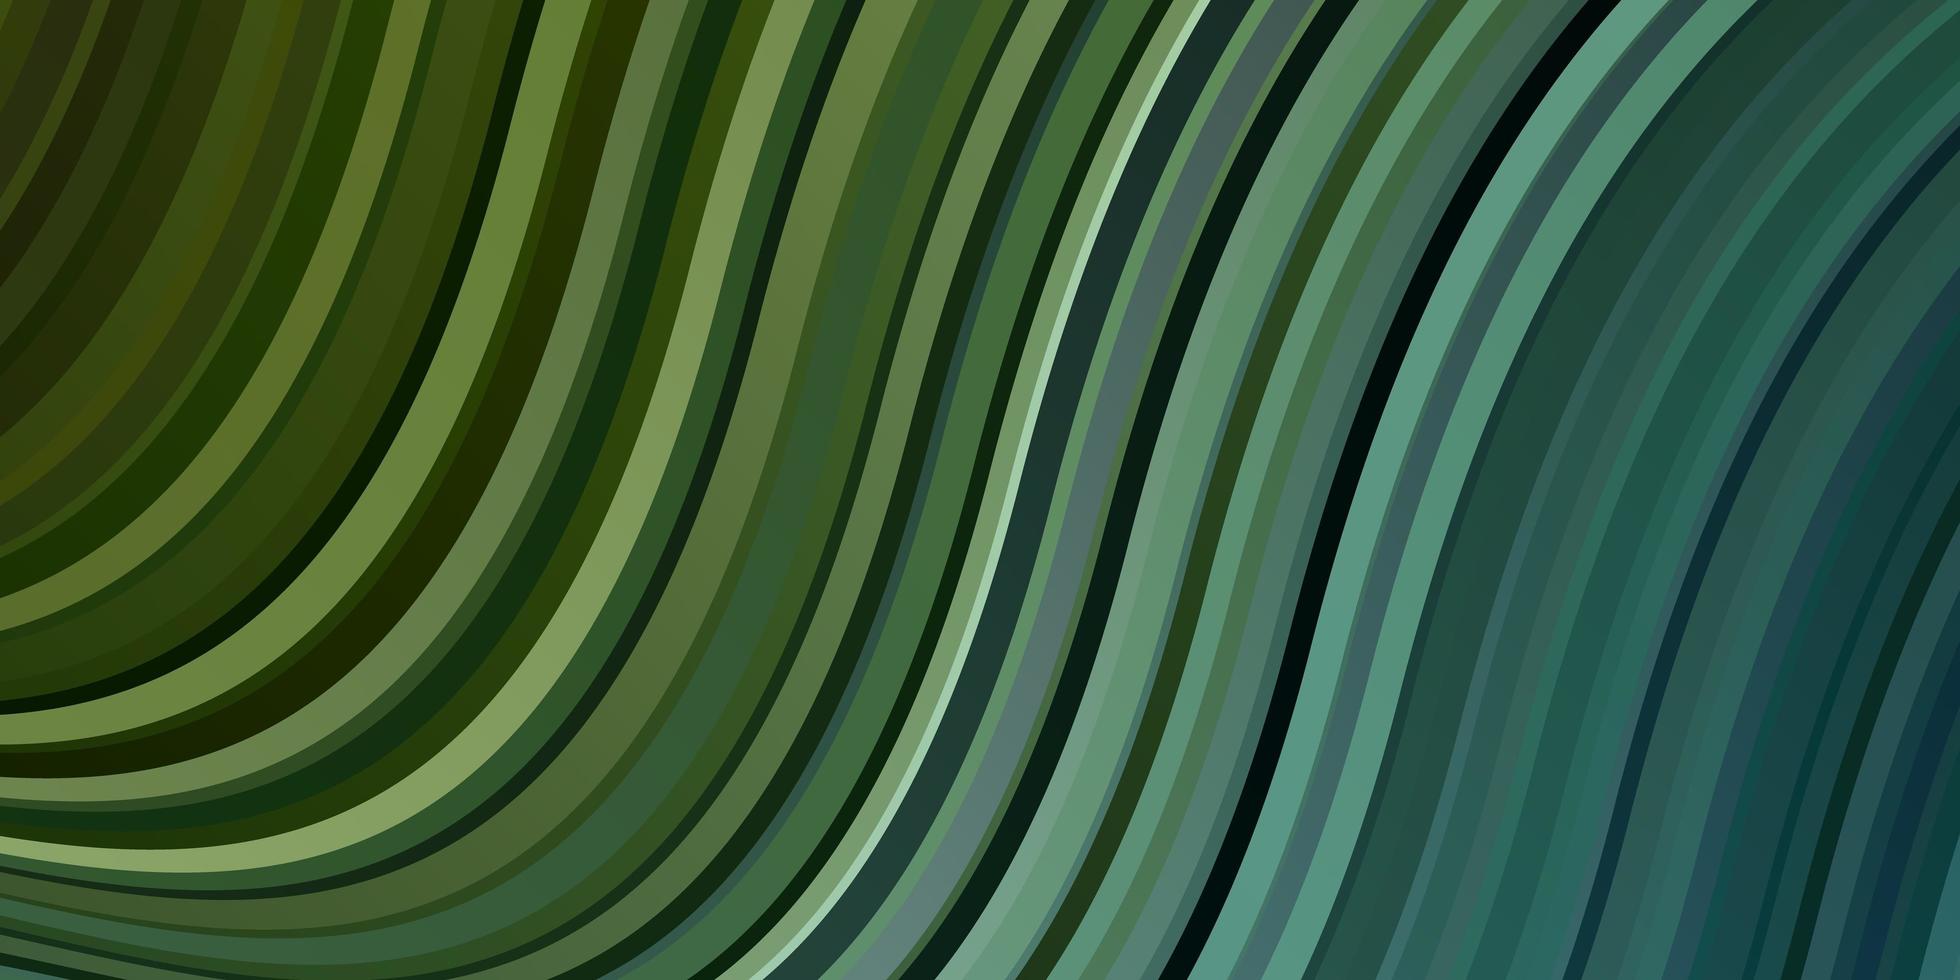 ljusblå, grön vektorlayout med kurvor. vektor